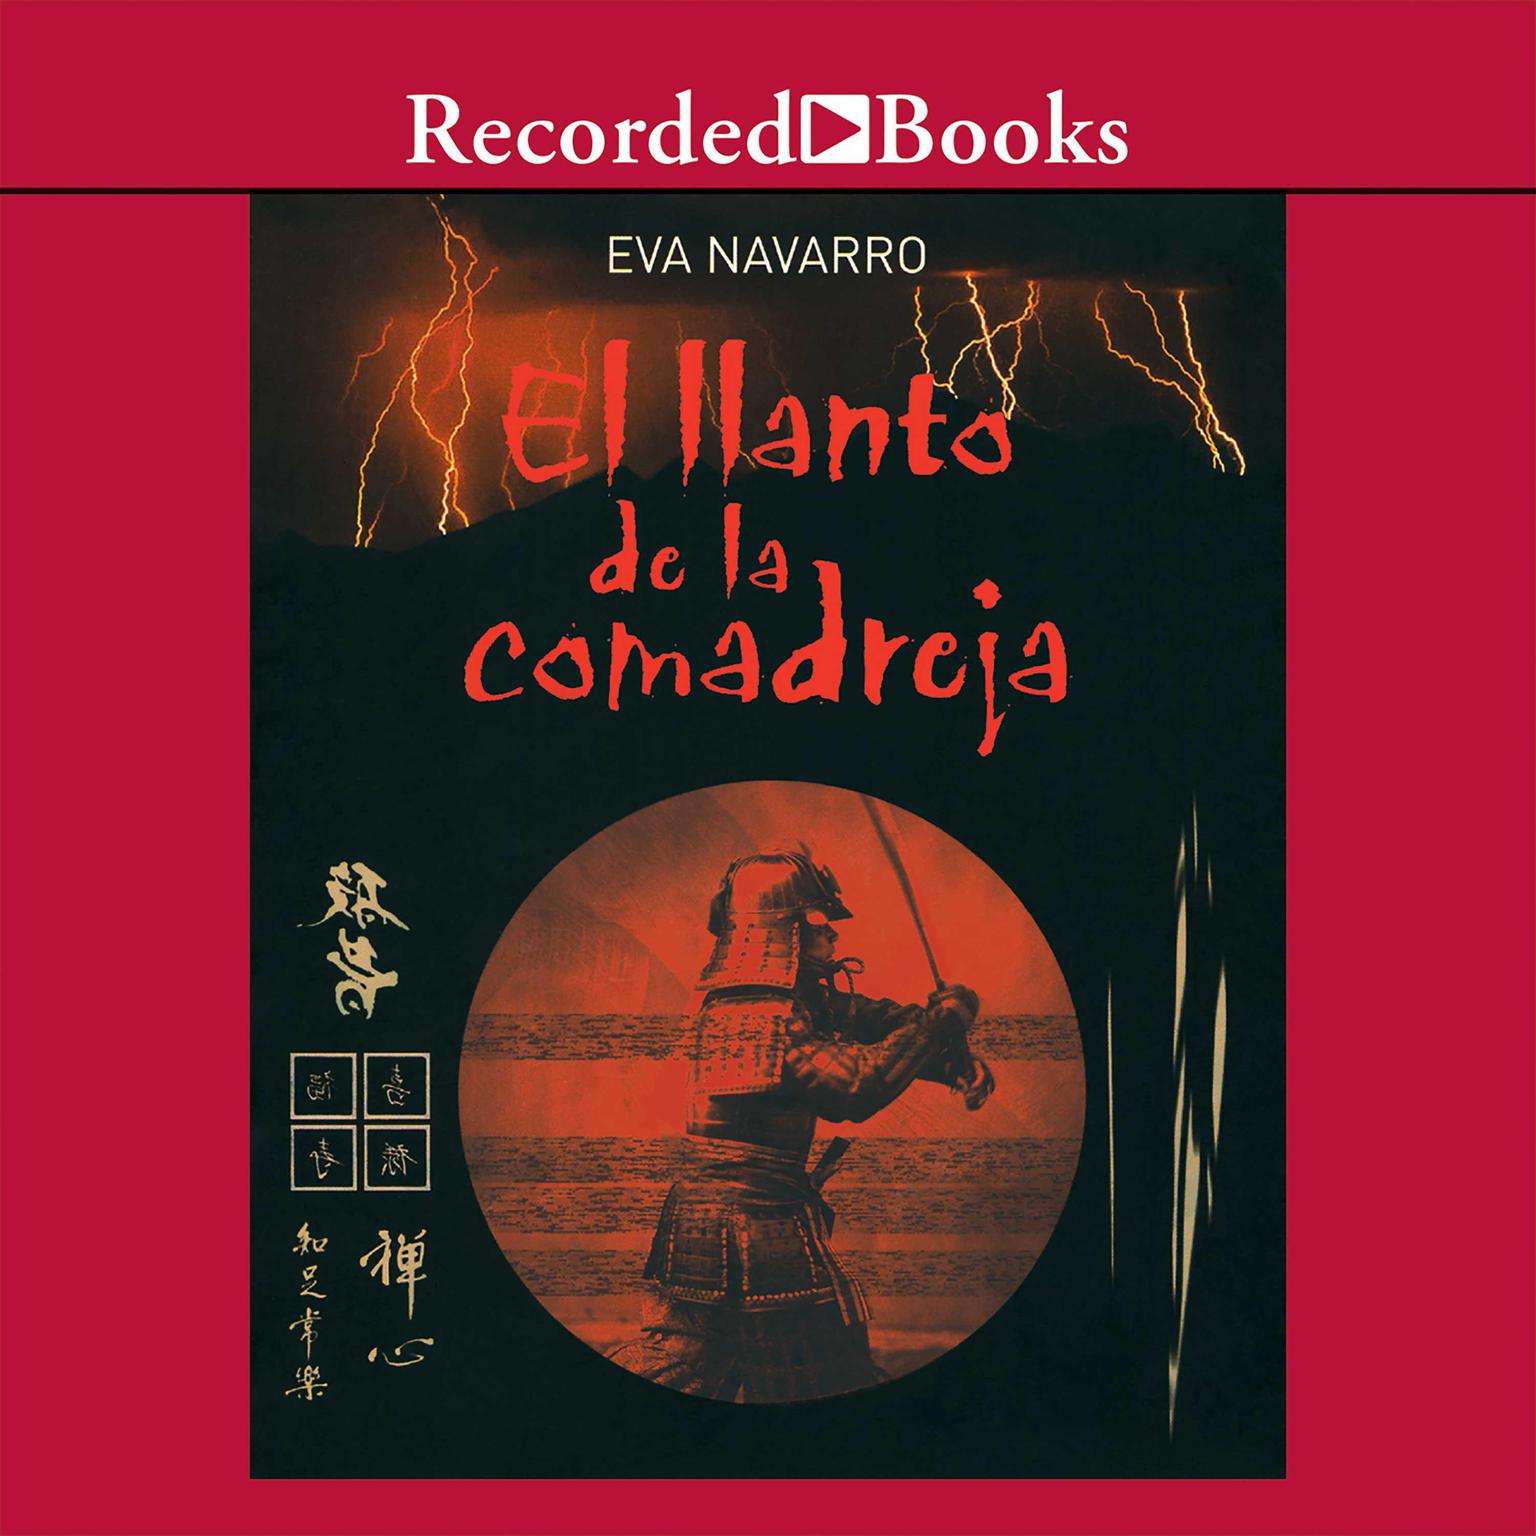 El llanto de la comadreja (The Cry of the Weasel) Audiobook, by Eva Navarro